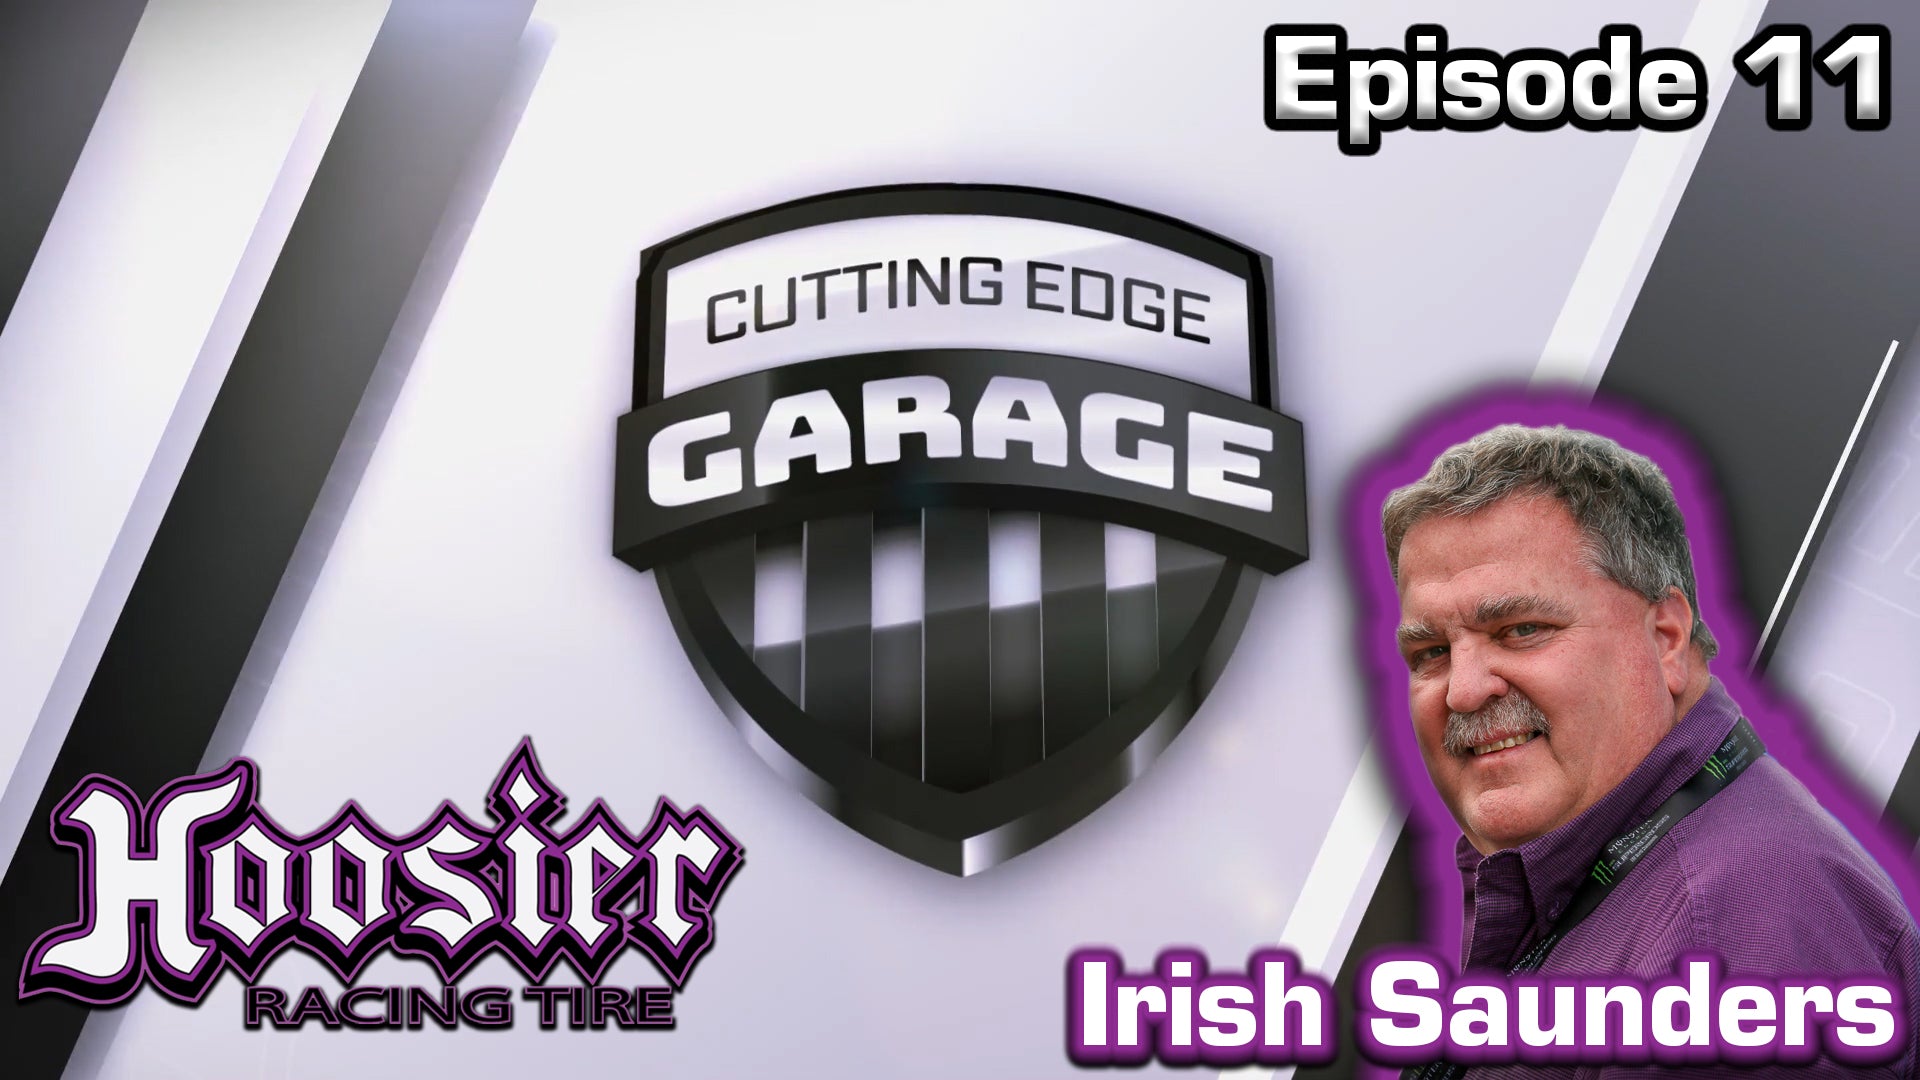 Cutting Edge Garage - Episode 11